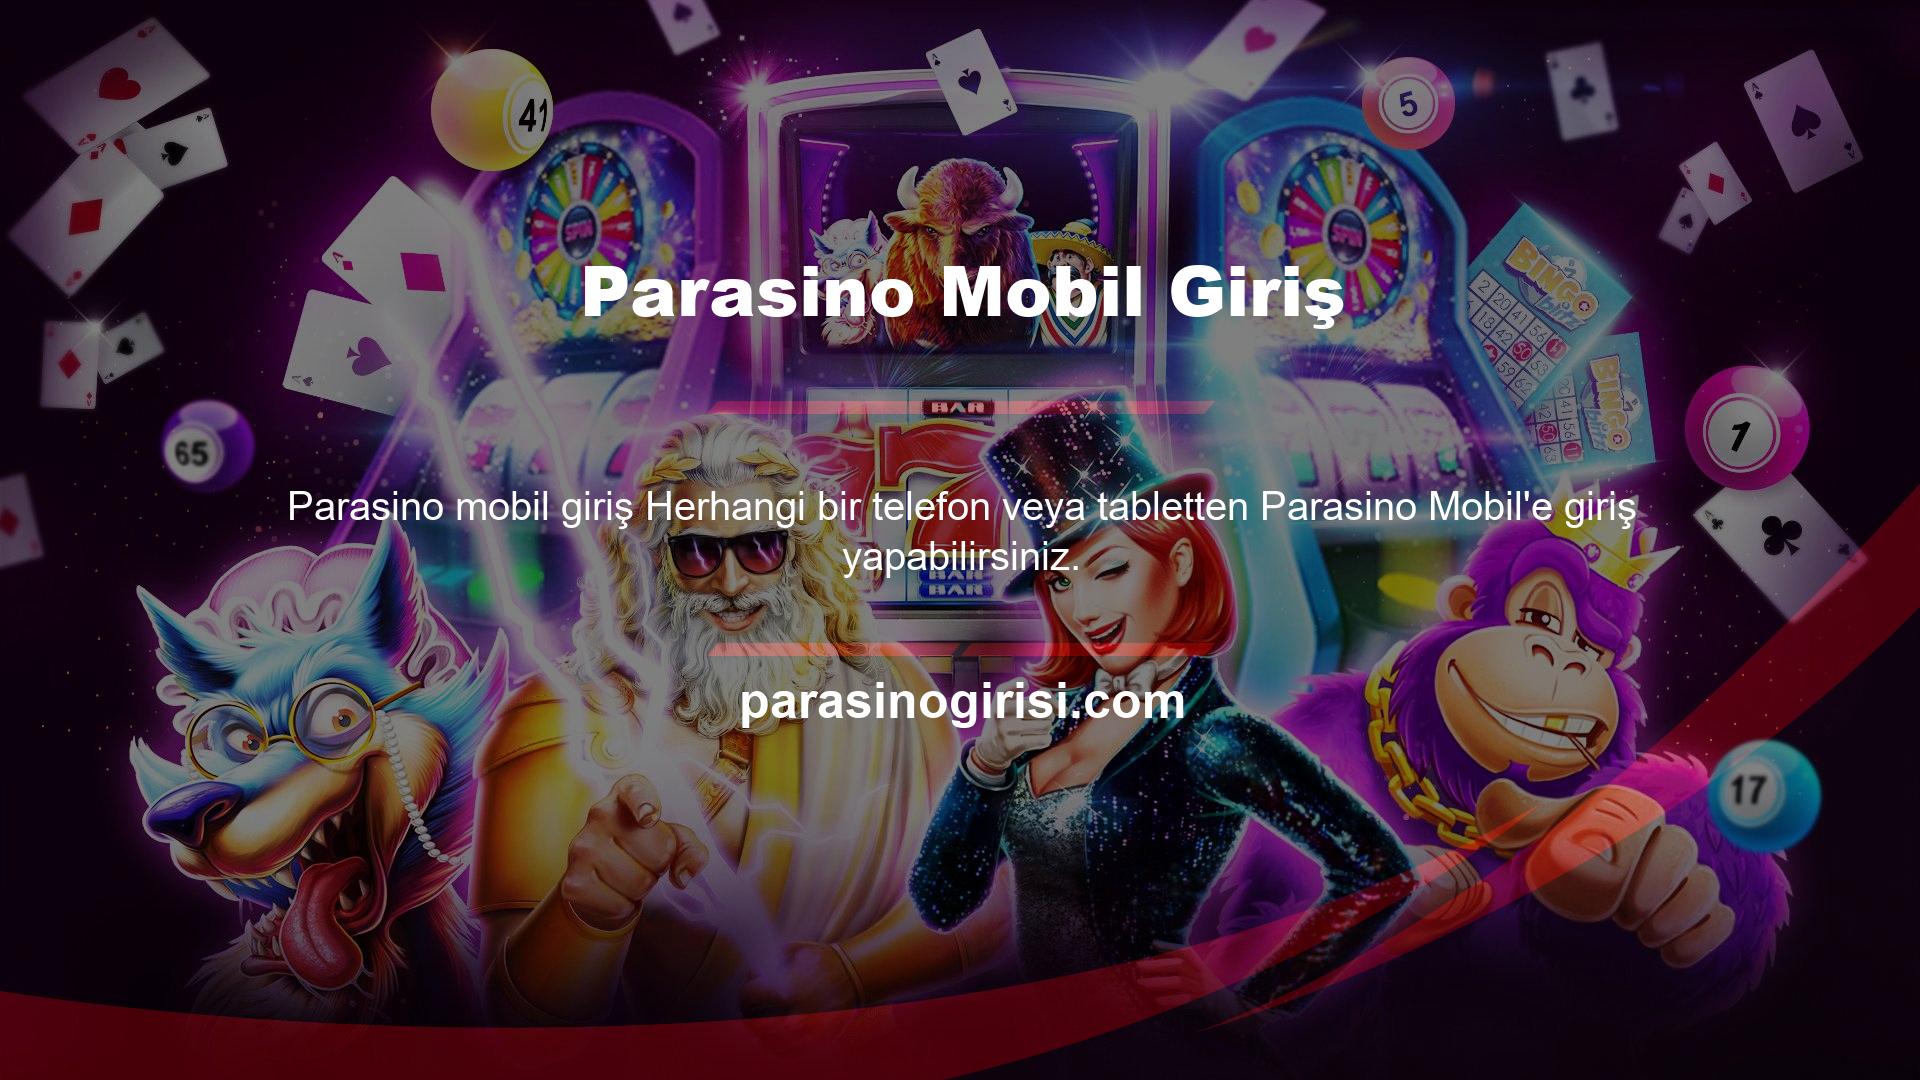 Android cihazınızda Parasino mobil sitesini kullanabilirsiniz